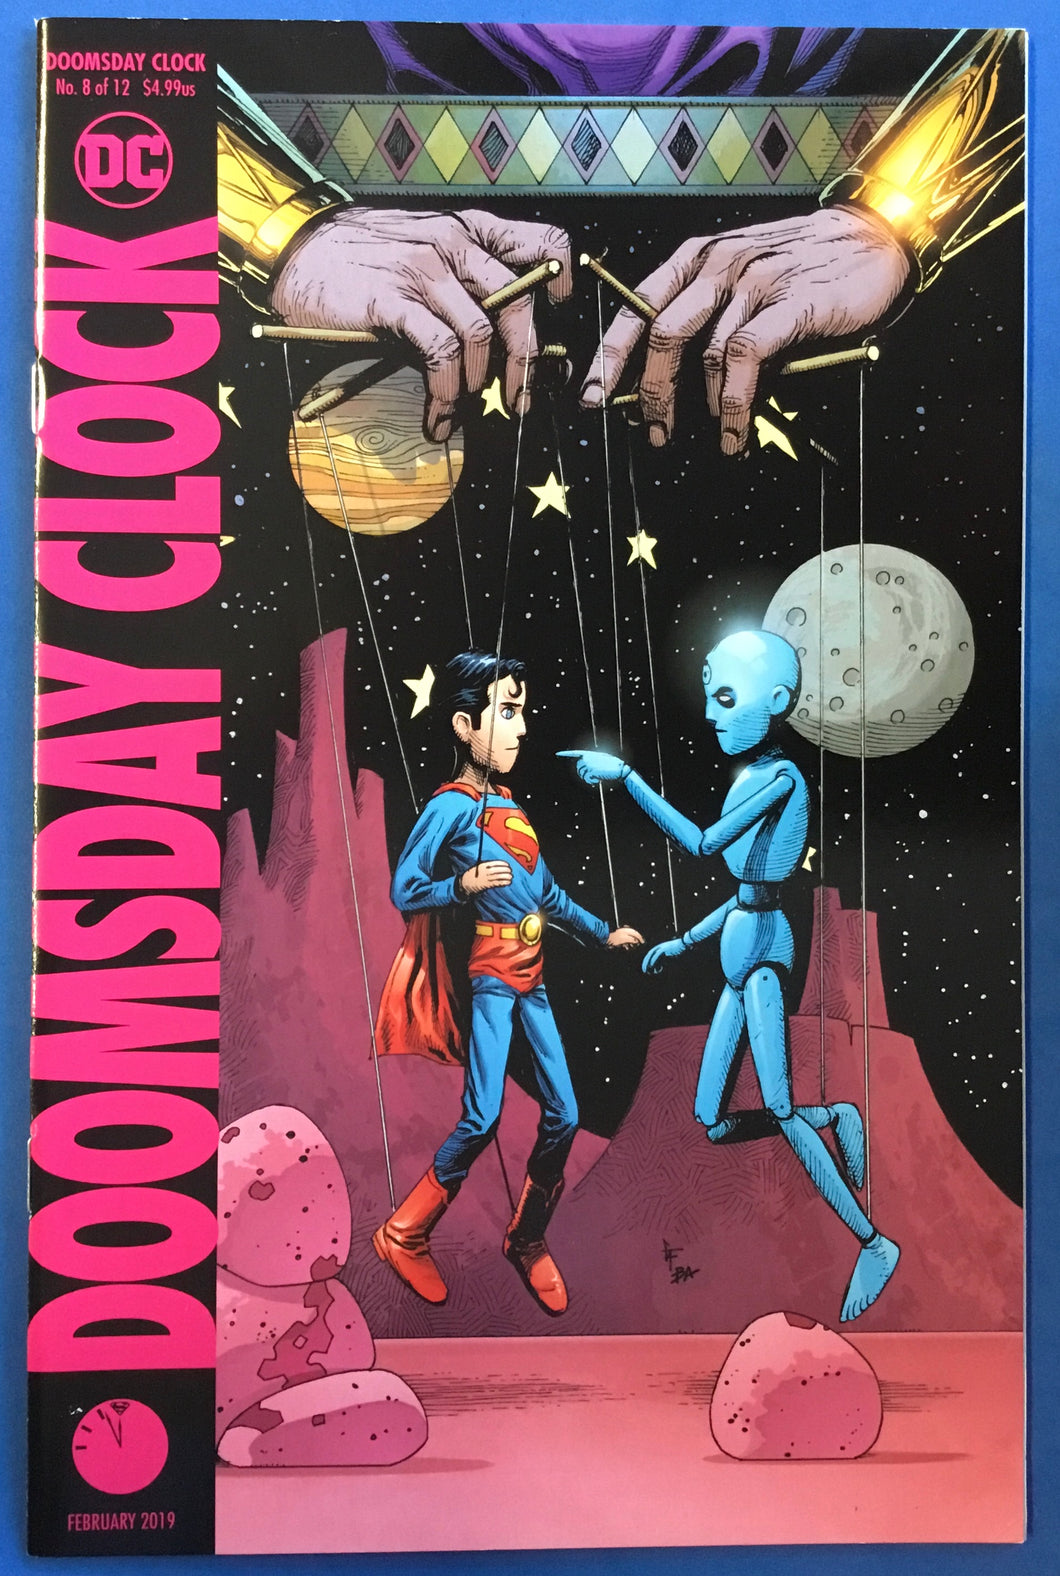 Doomsday Clock No. #8 2019 Variant Cover DC Comics